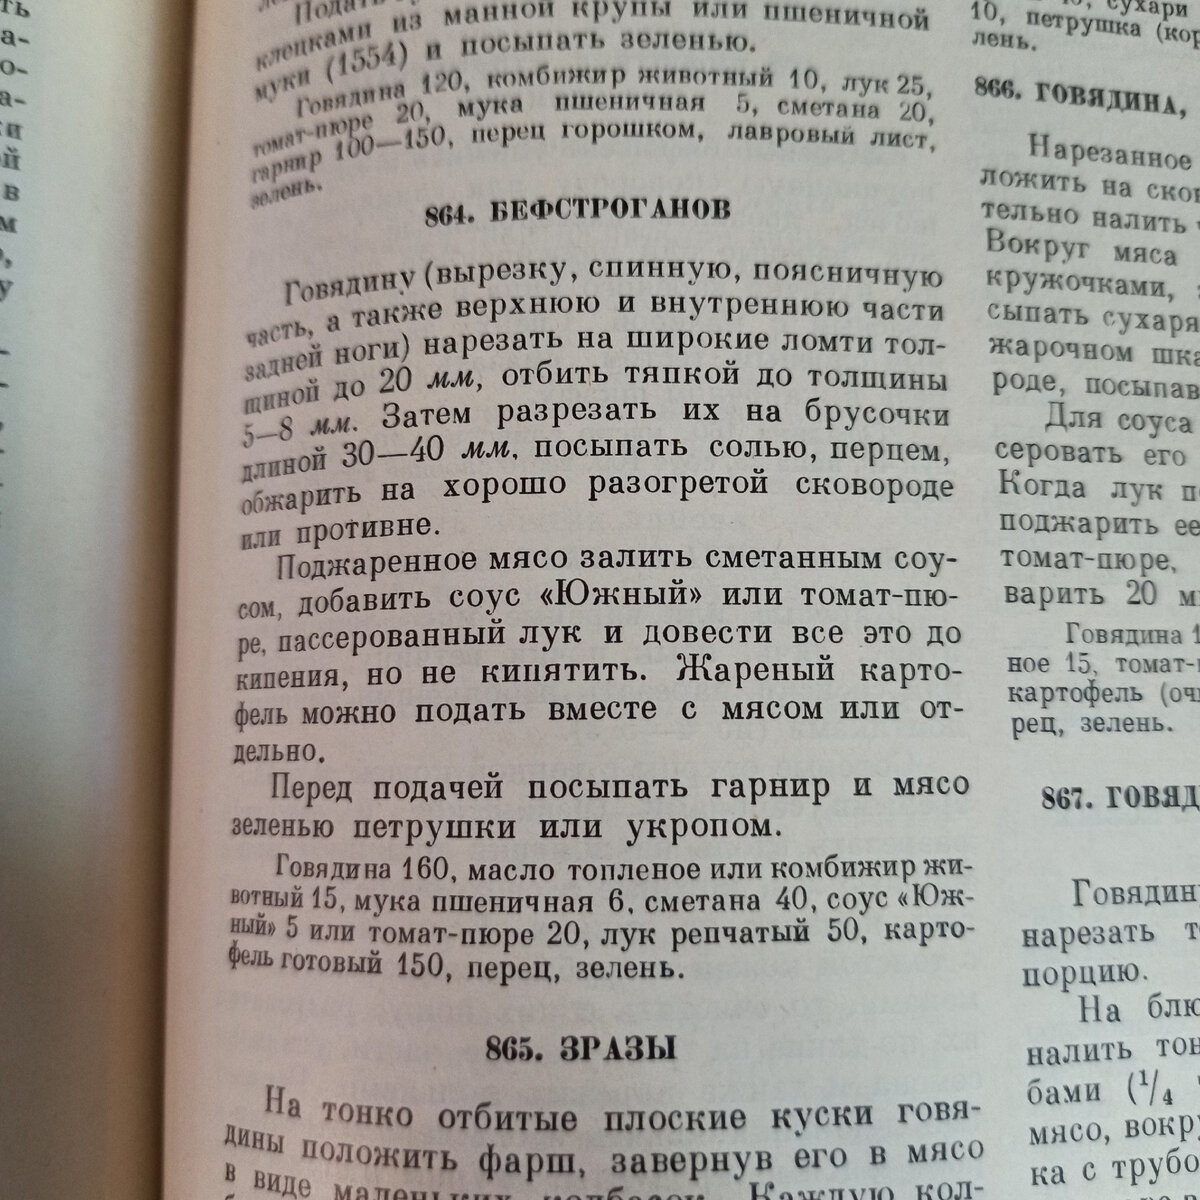 Рецепт бефстроганов из книги 1955 года издания.